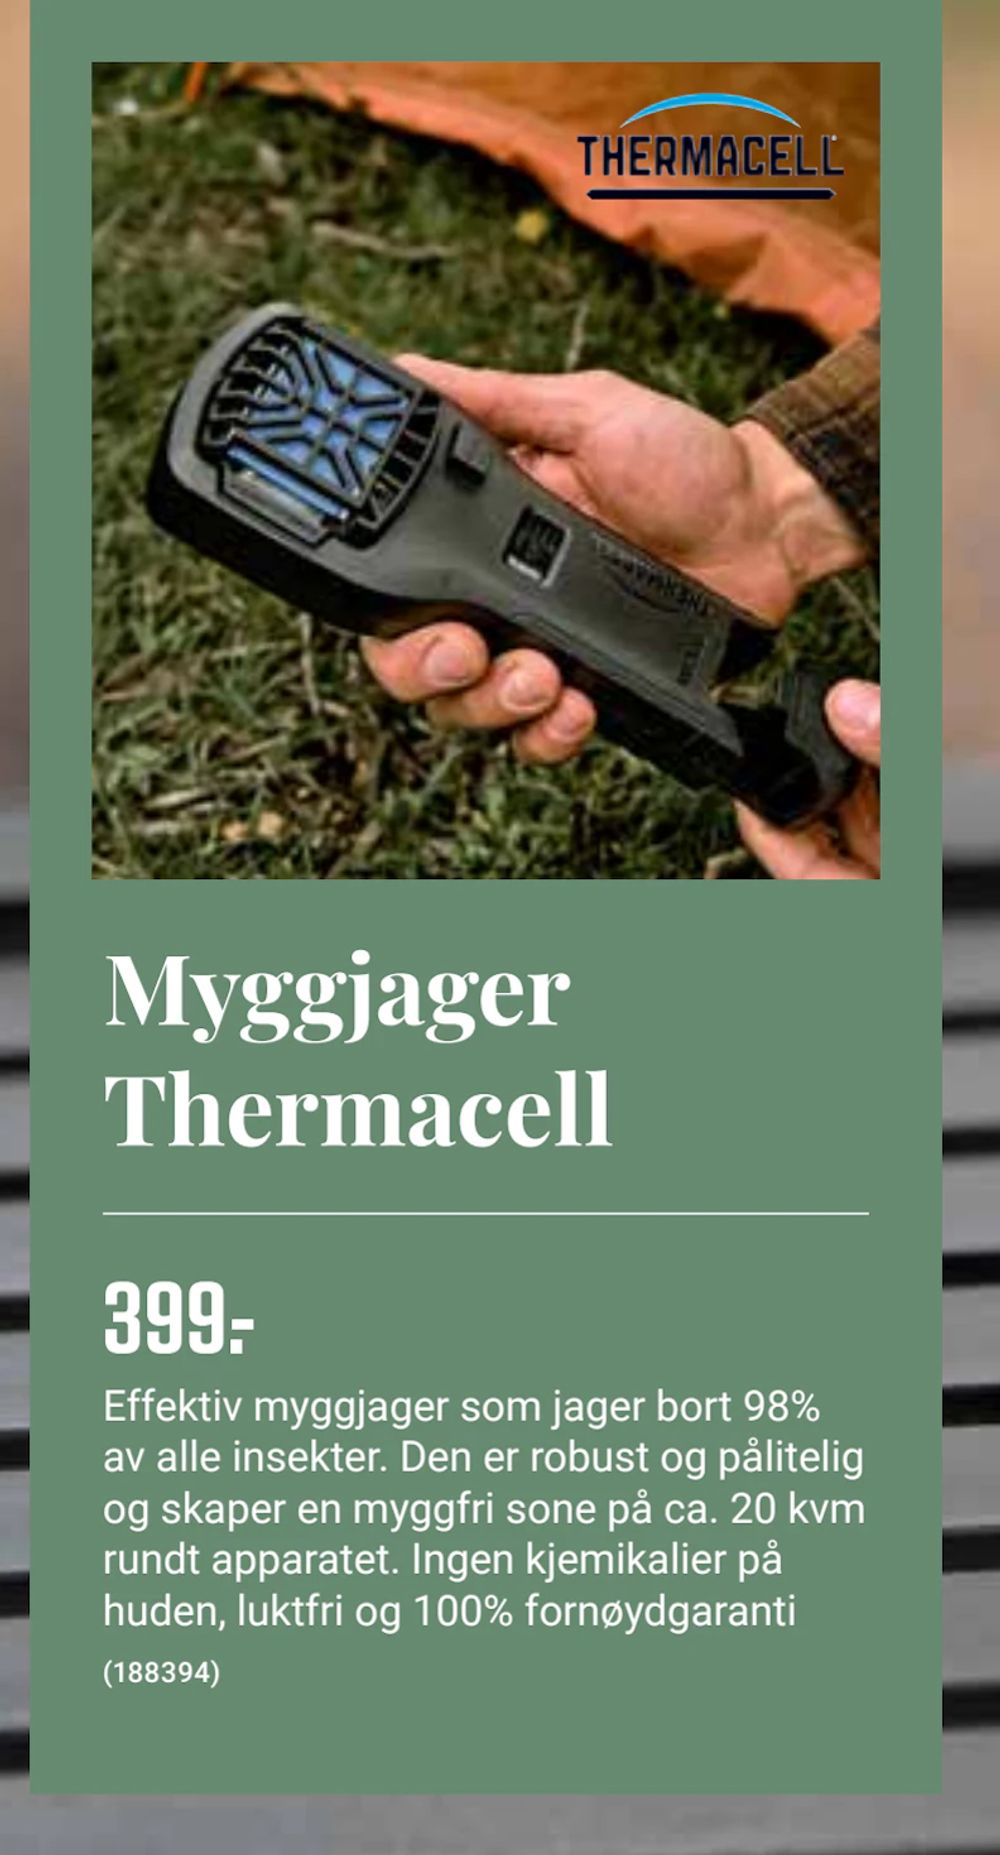 Tilbud på Myggjager Thermacell fra Europris til 399 kr